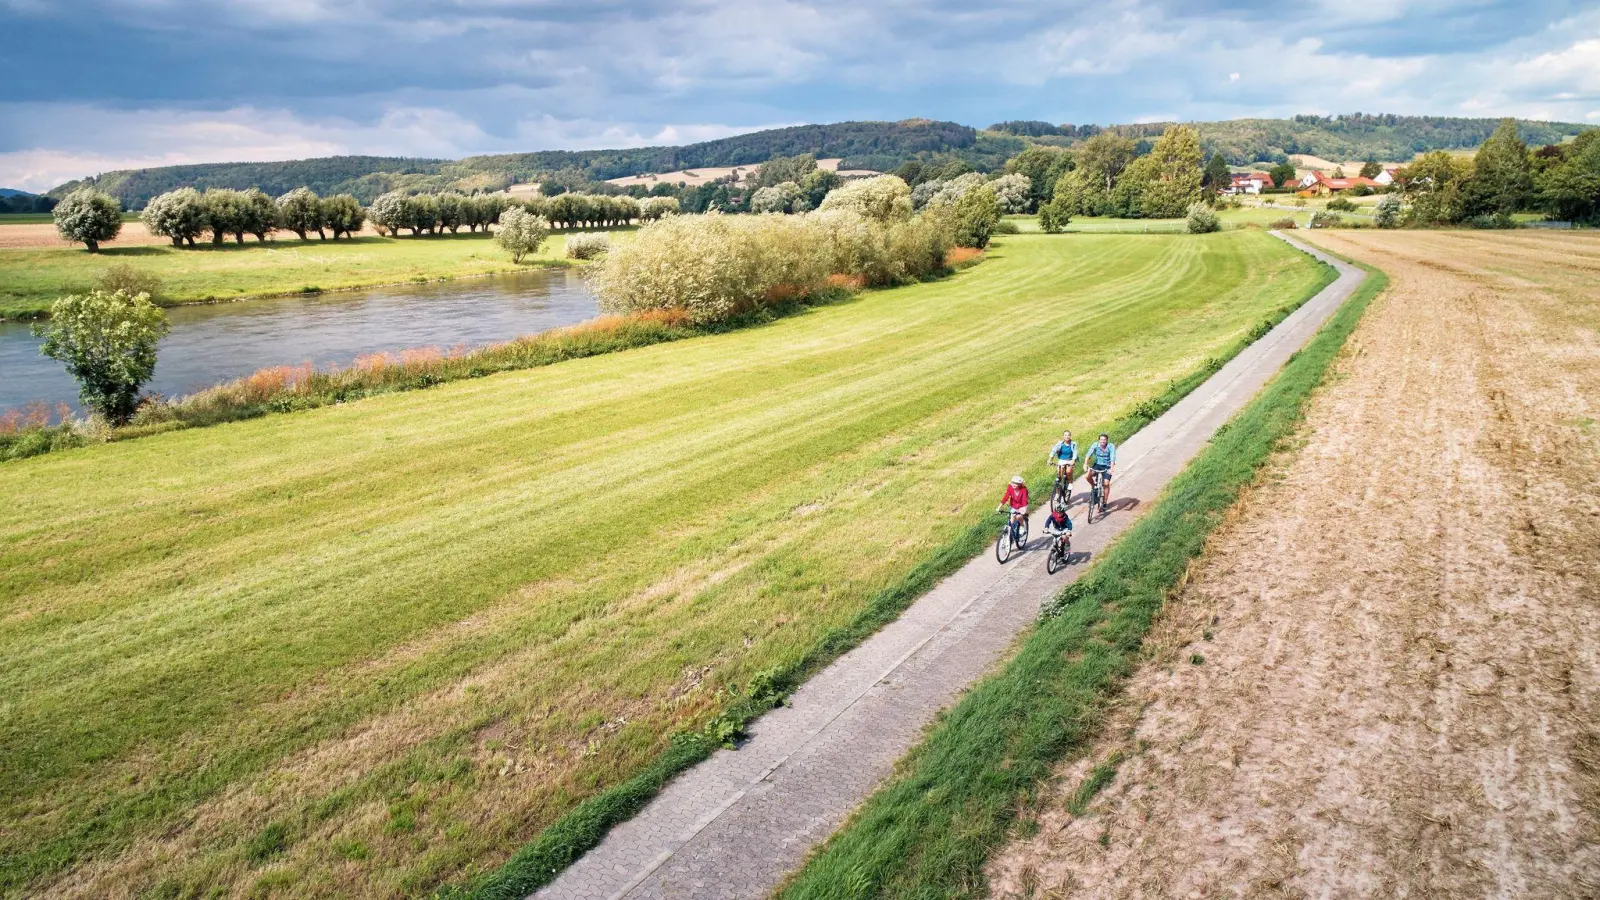 Der Weser-Radweg führt über mehr als 500 Kilometer vom Weserbergland zur Nordsee und ist laut der ADFC-Radreiseanalyse erneut der beliebteste deutsche Radfernweg. (Foto: Jens Wegener/TMN, DZT/dpa-tmn)